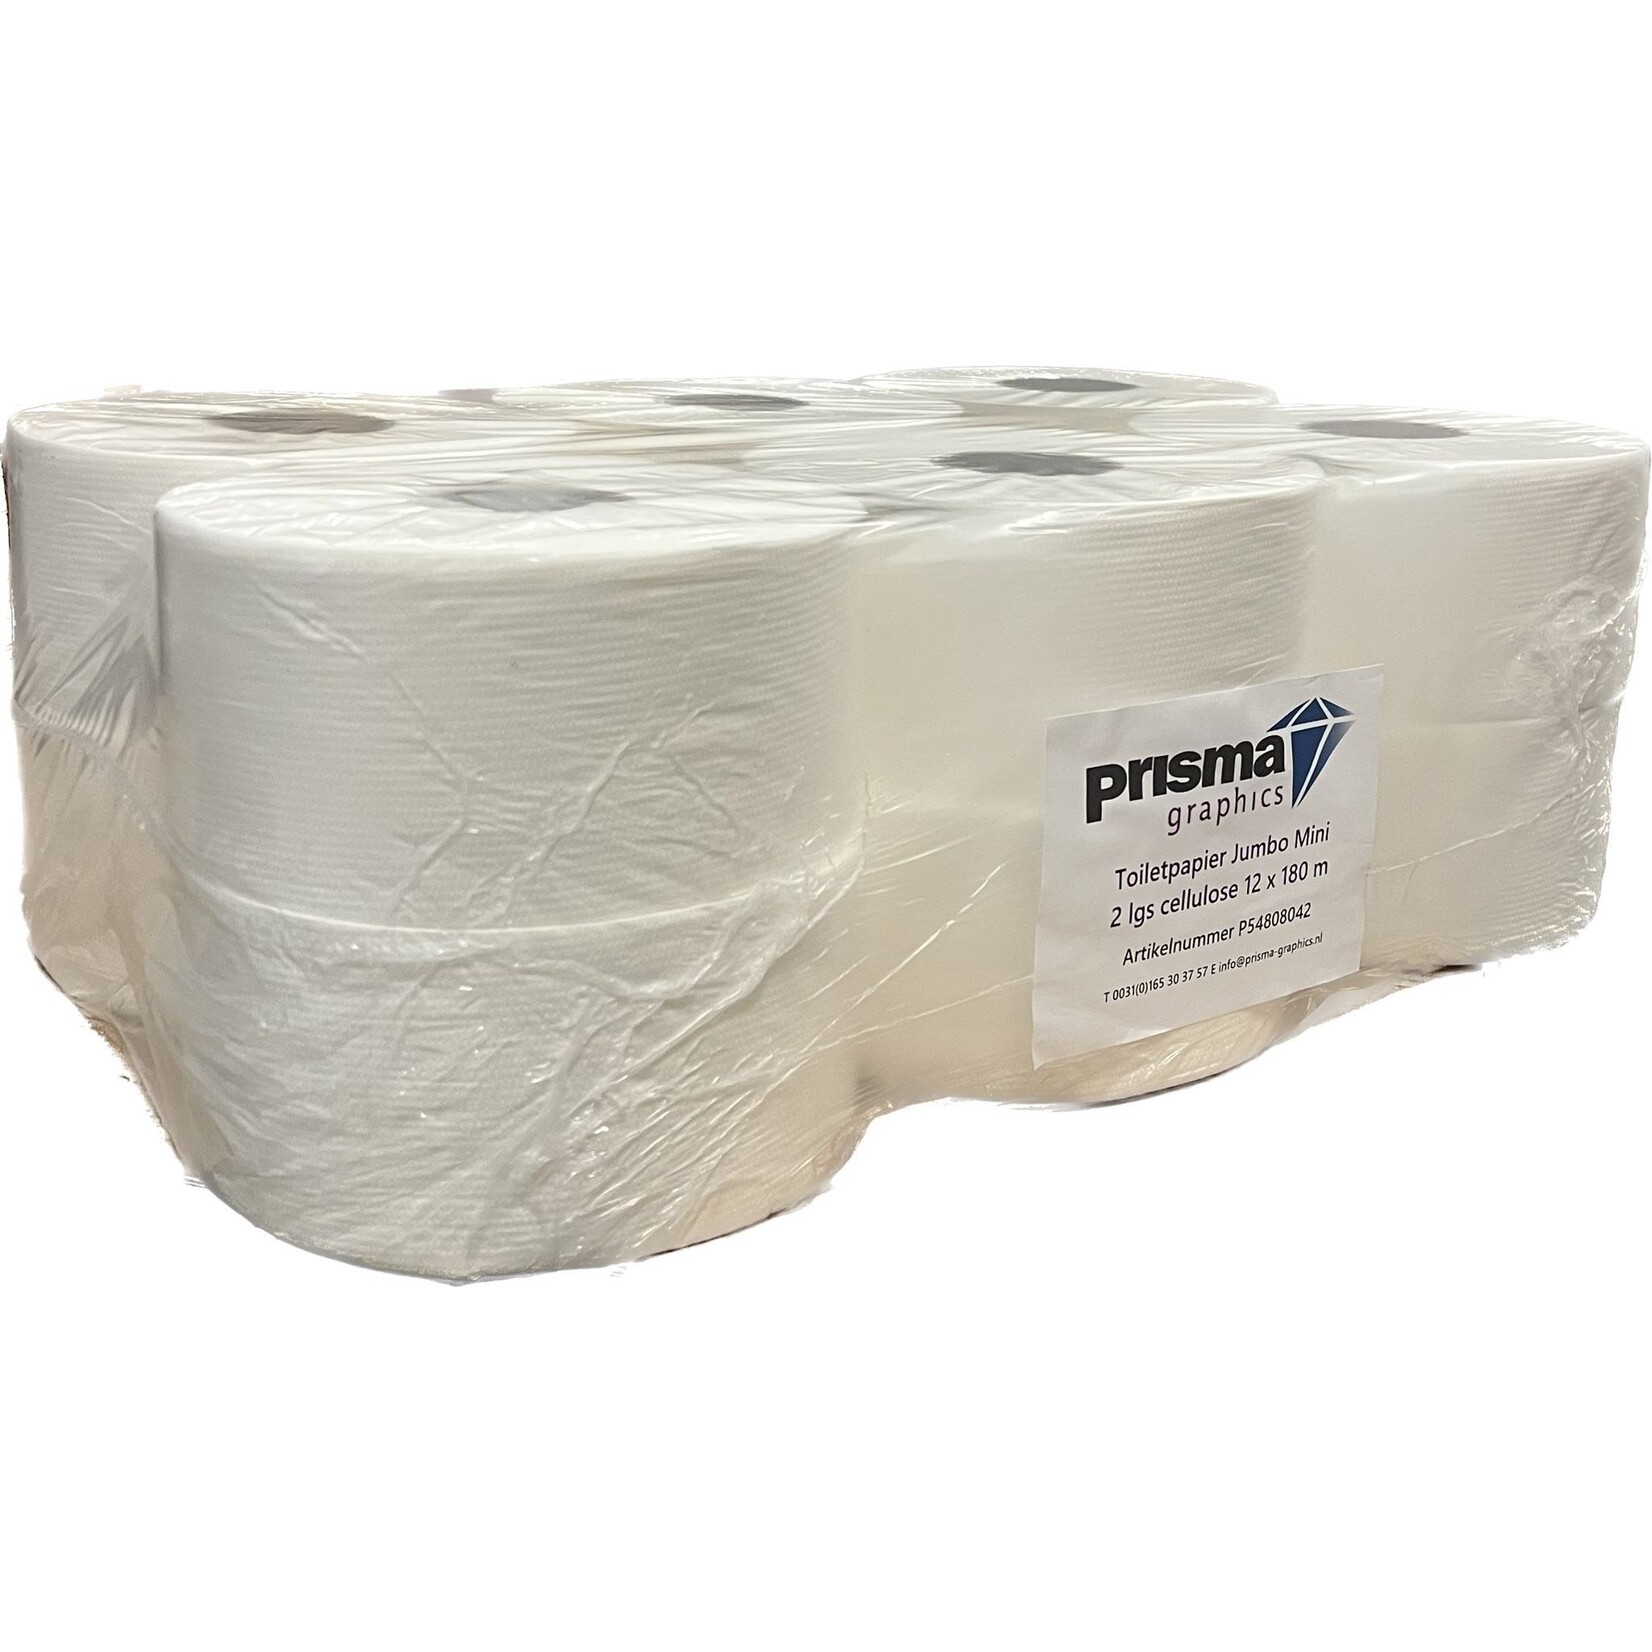 Prisma Graphics Mini Jumbo toiletpapier rollen wit 2-laags (12)